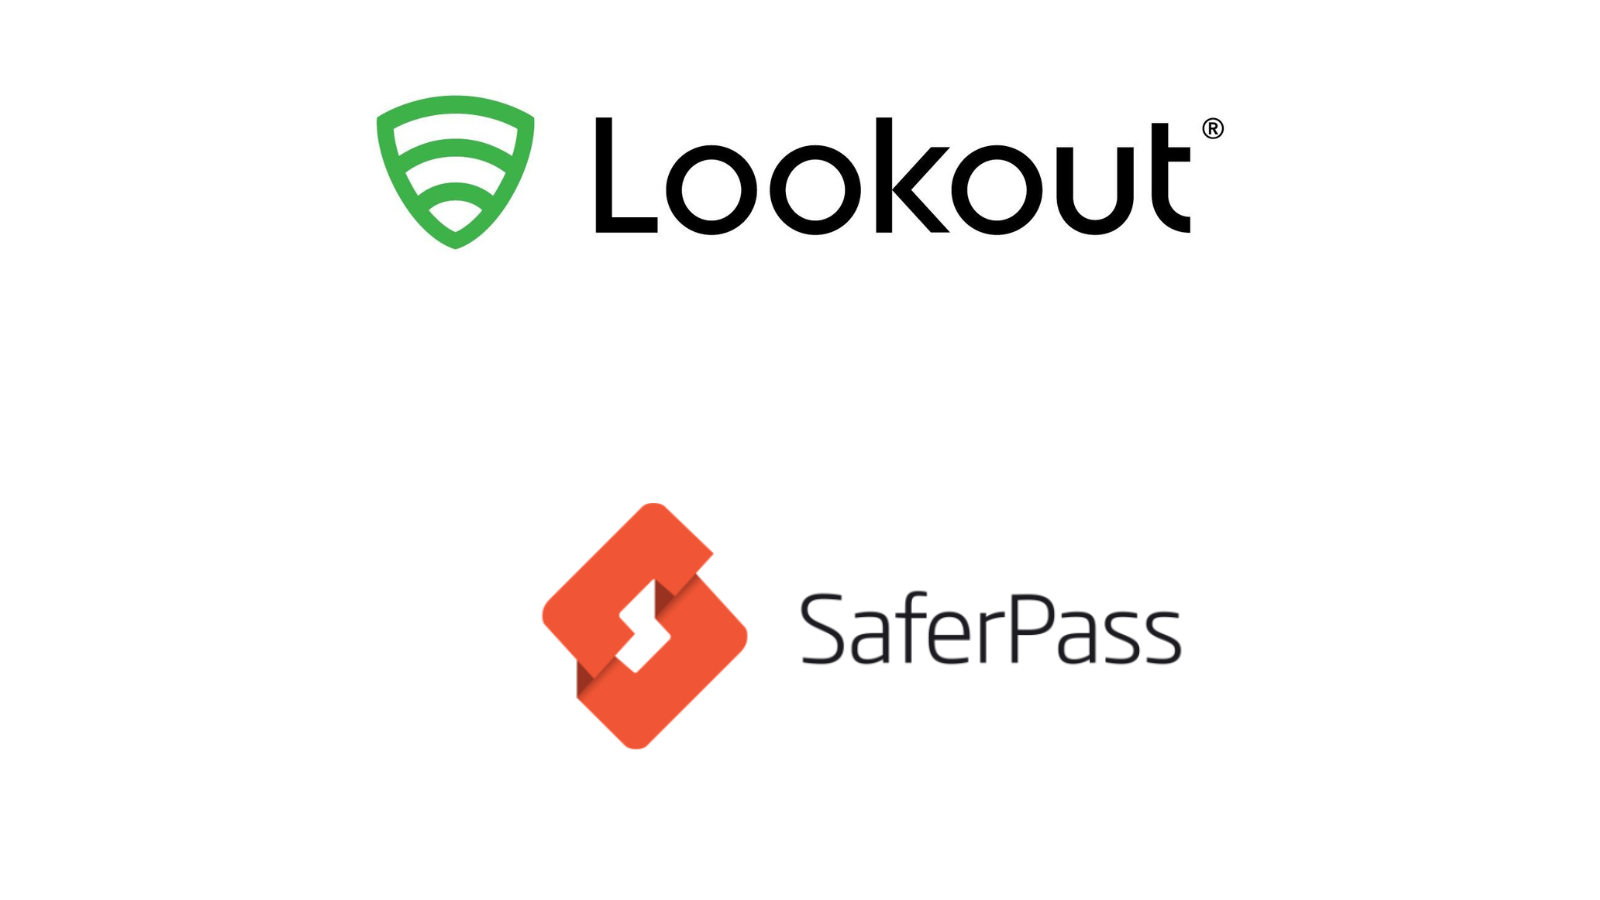 Lookout-SaferPass Logos